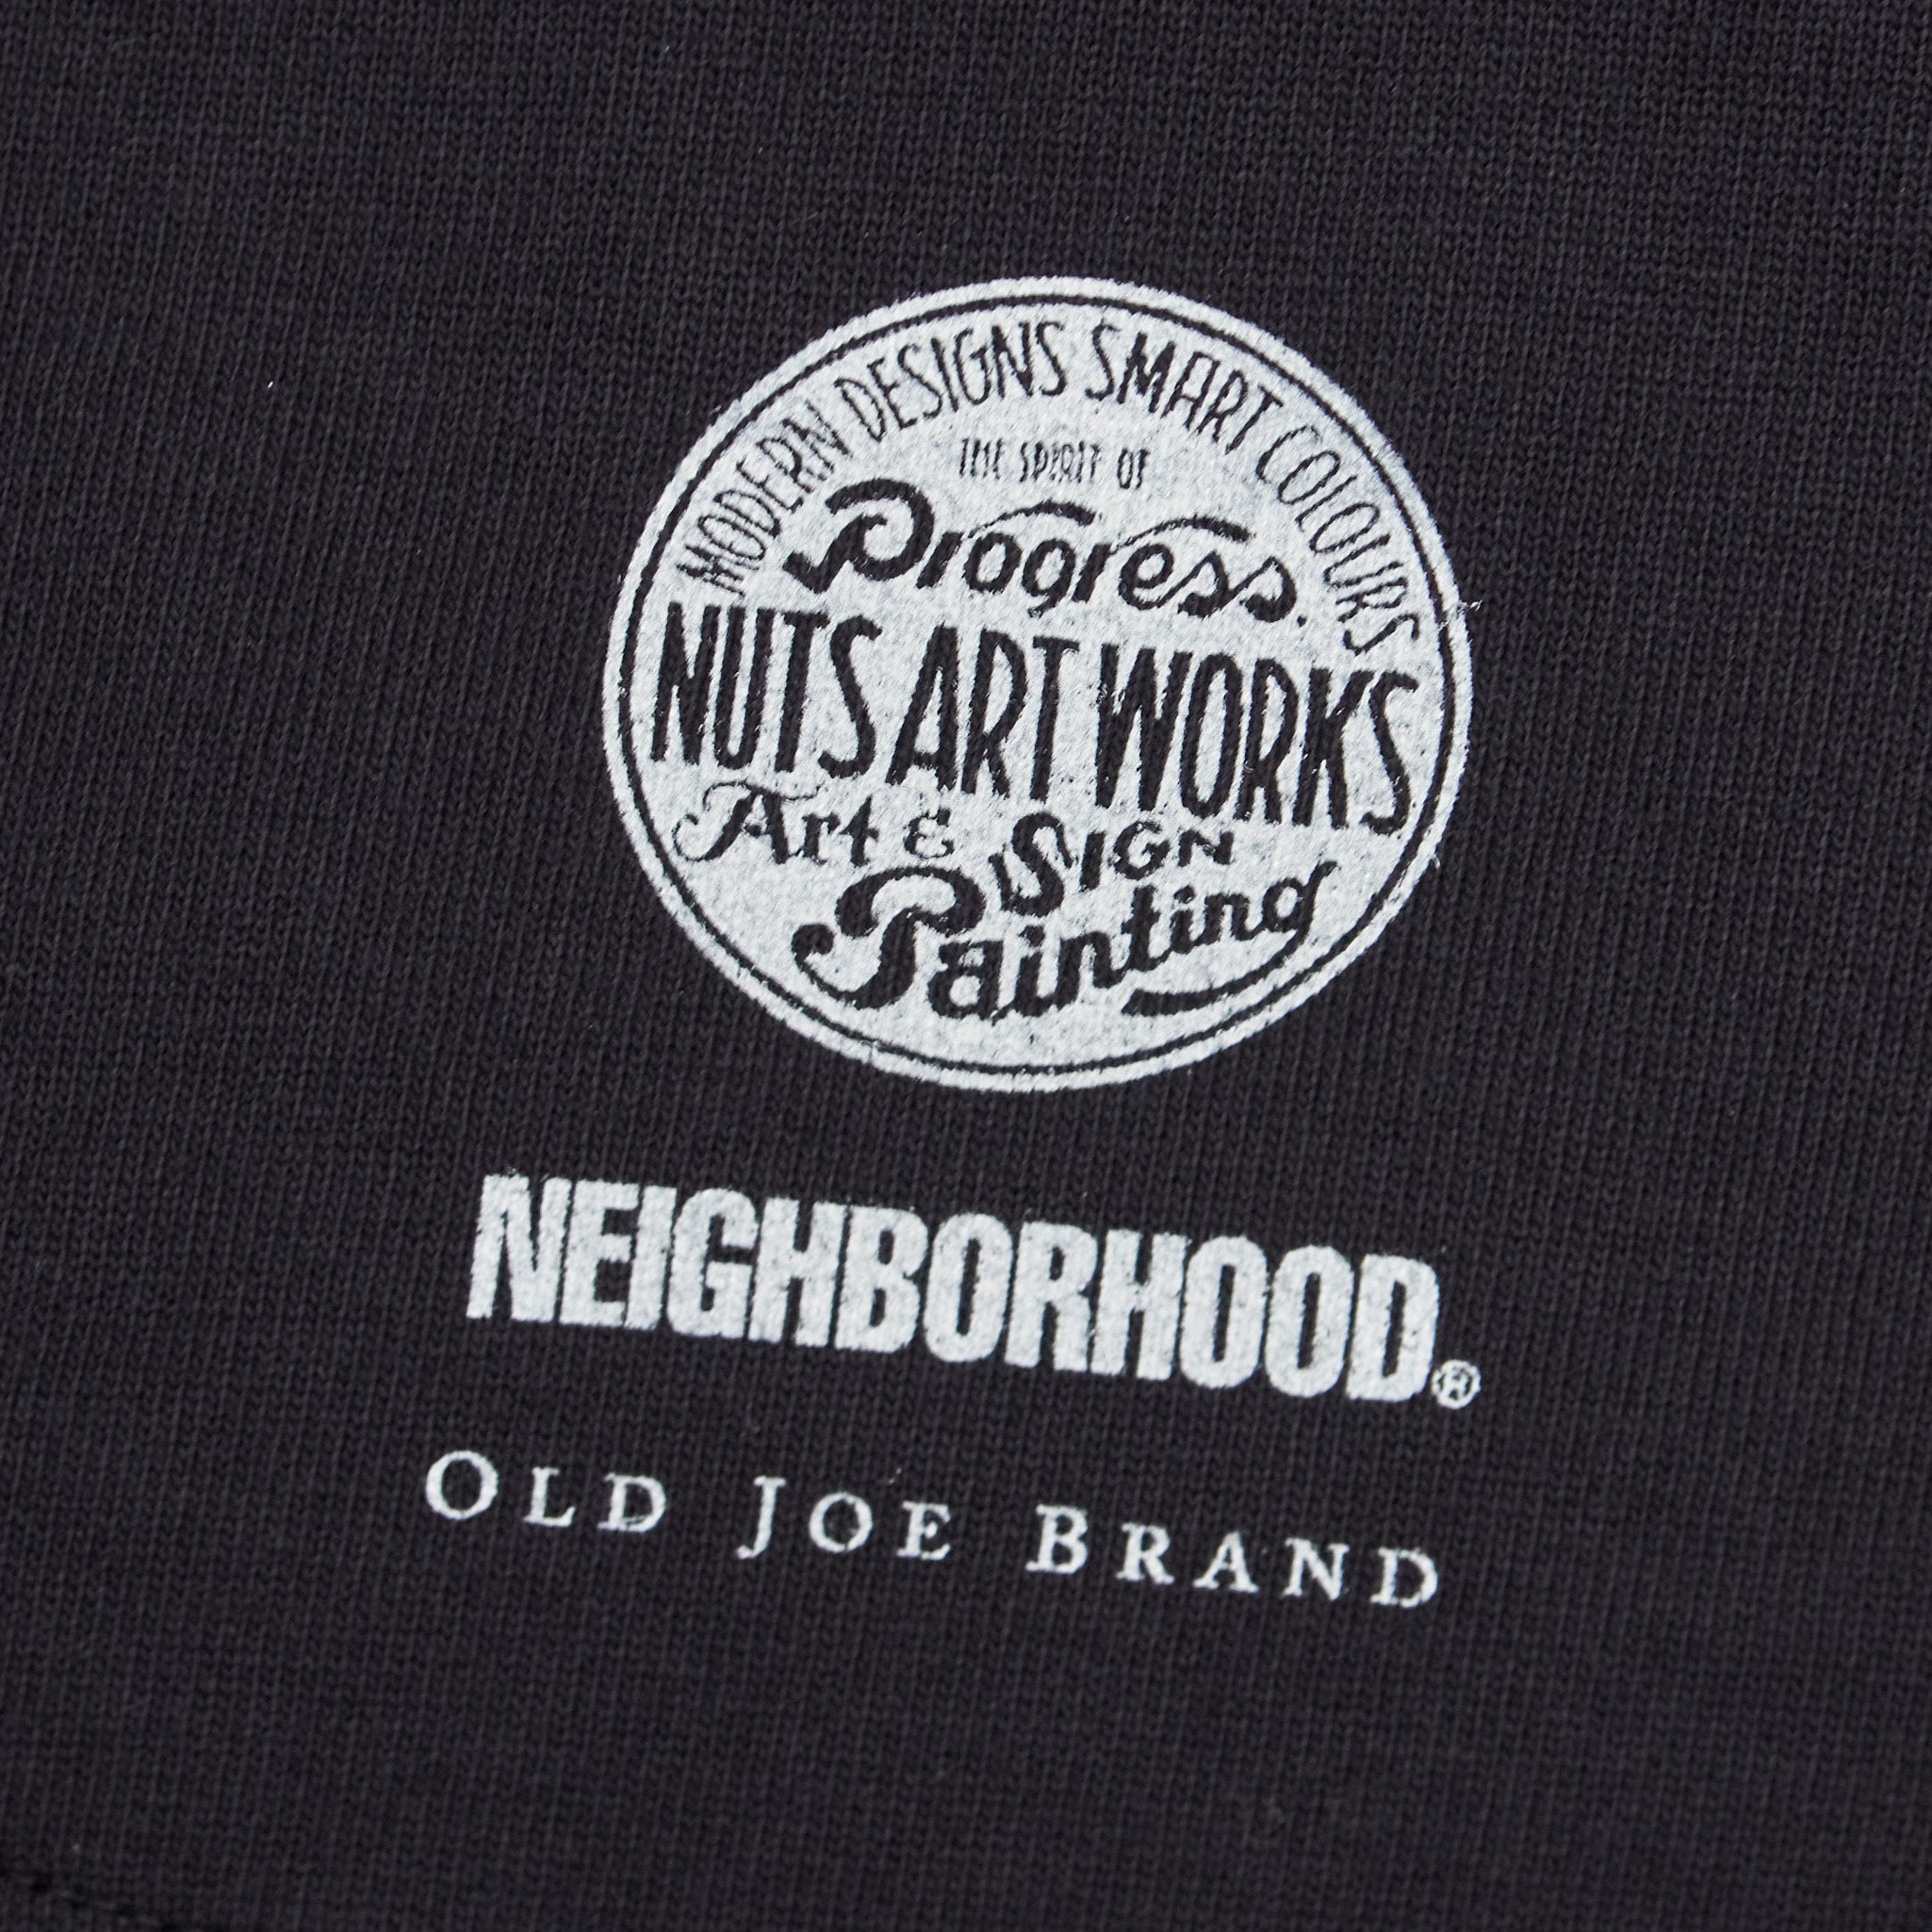 OLD JOE - NEIGHBORHOOD NUTS ART WORKS-